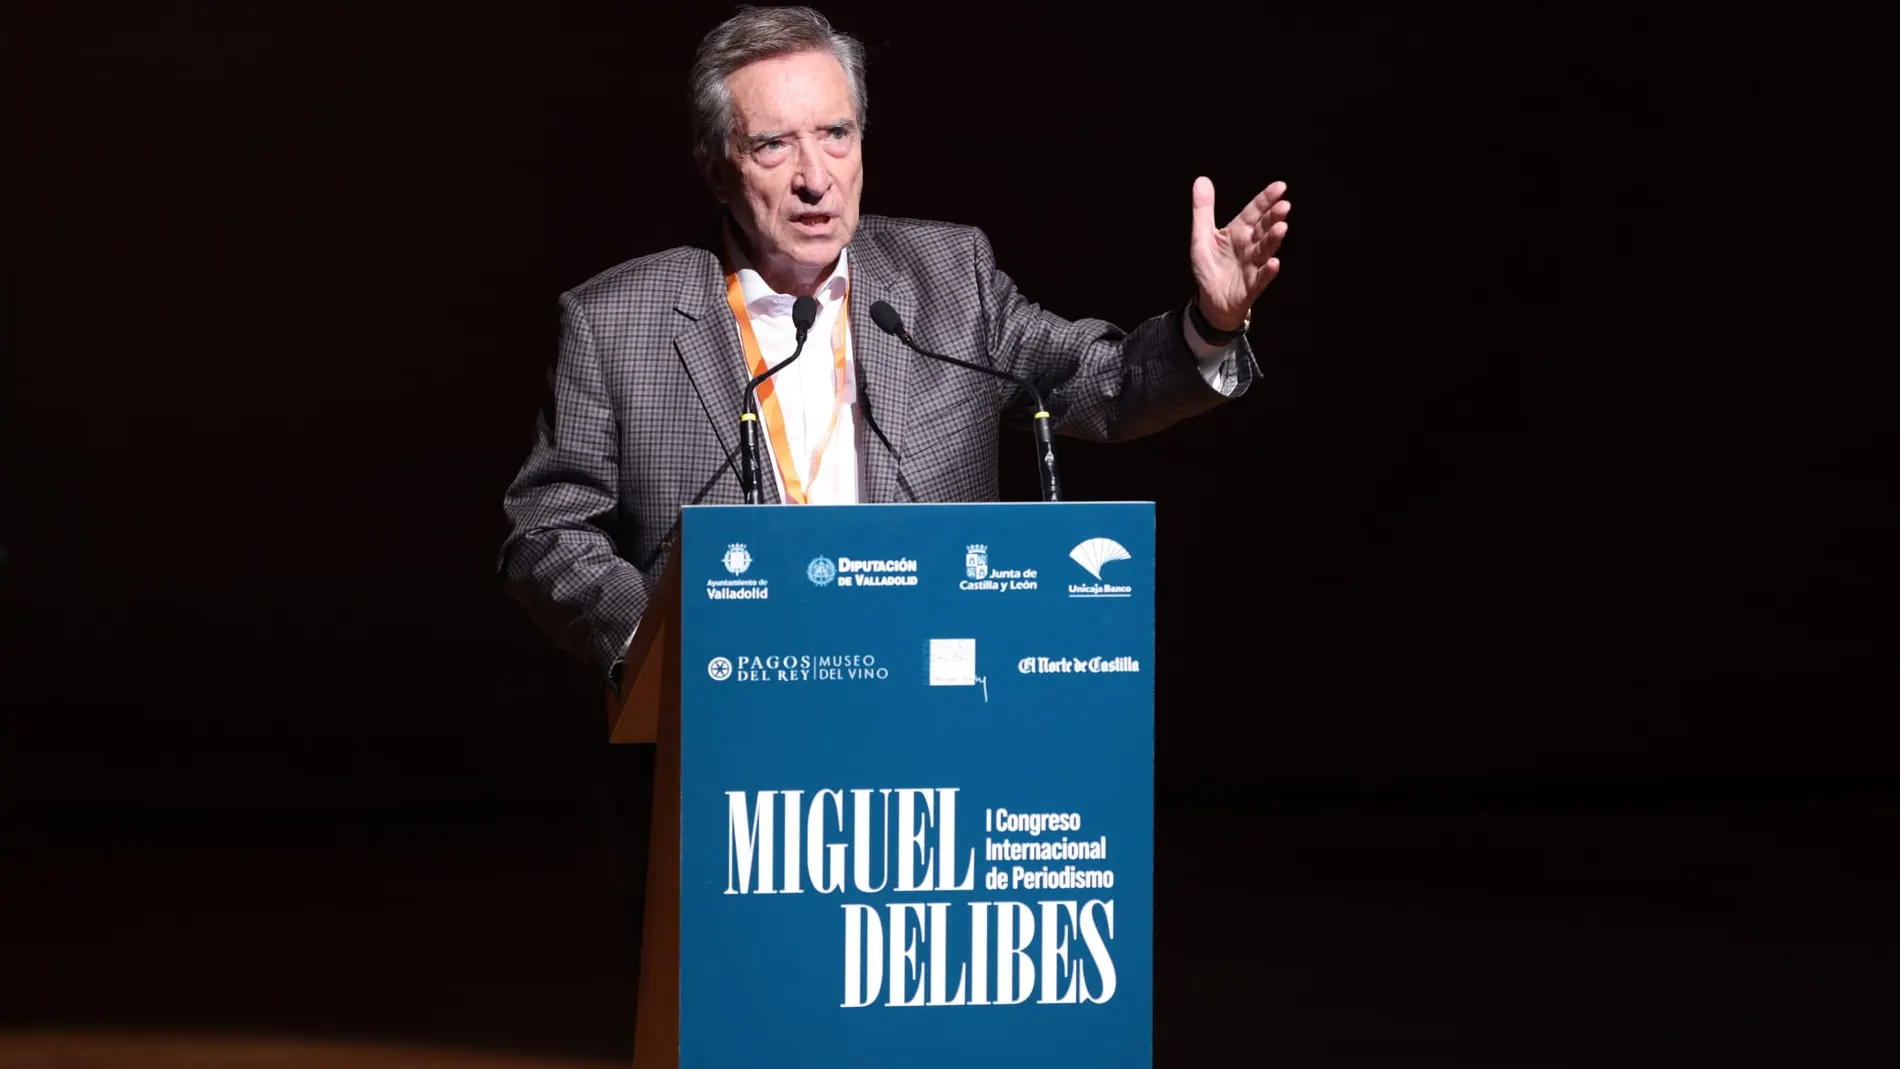 Iñaki Gabilondo interviene en el Congreso sobre Miguel Delibes en Valladolid